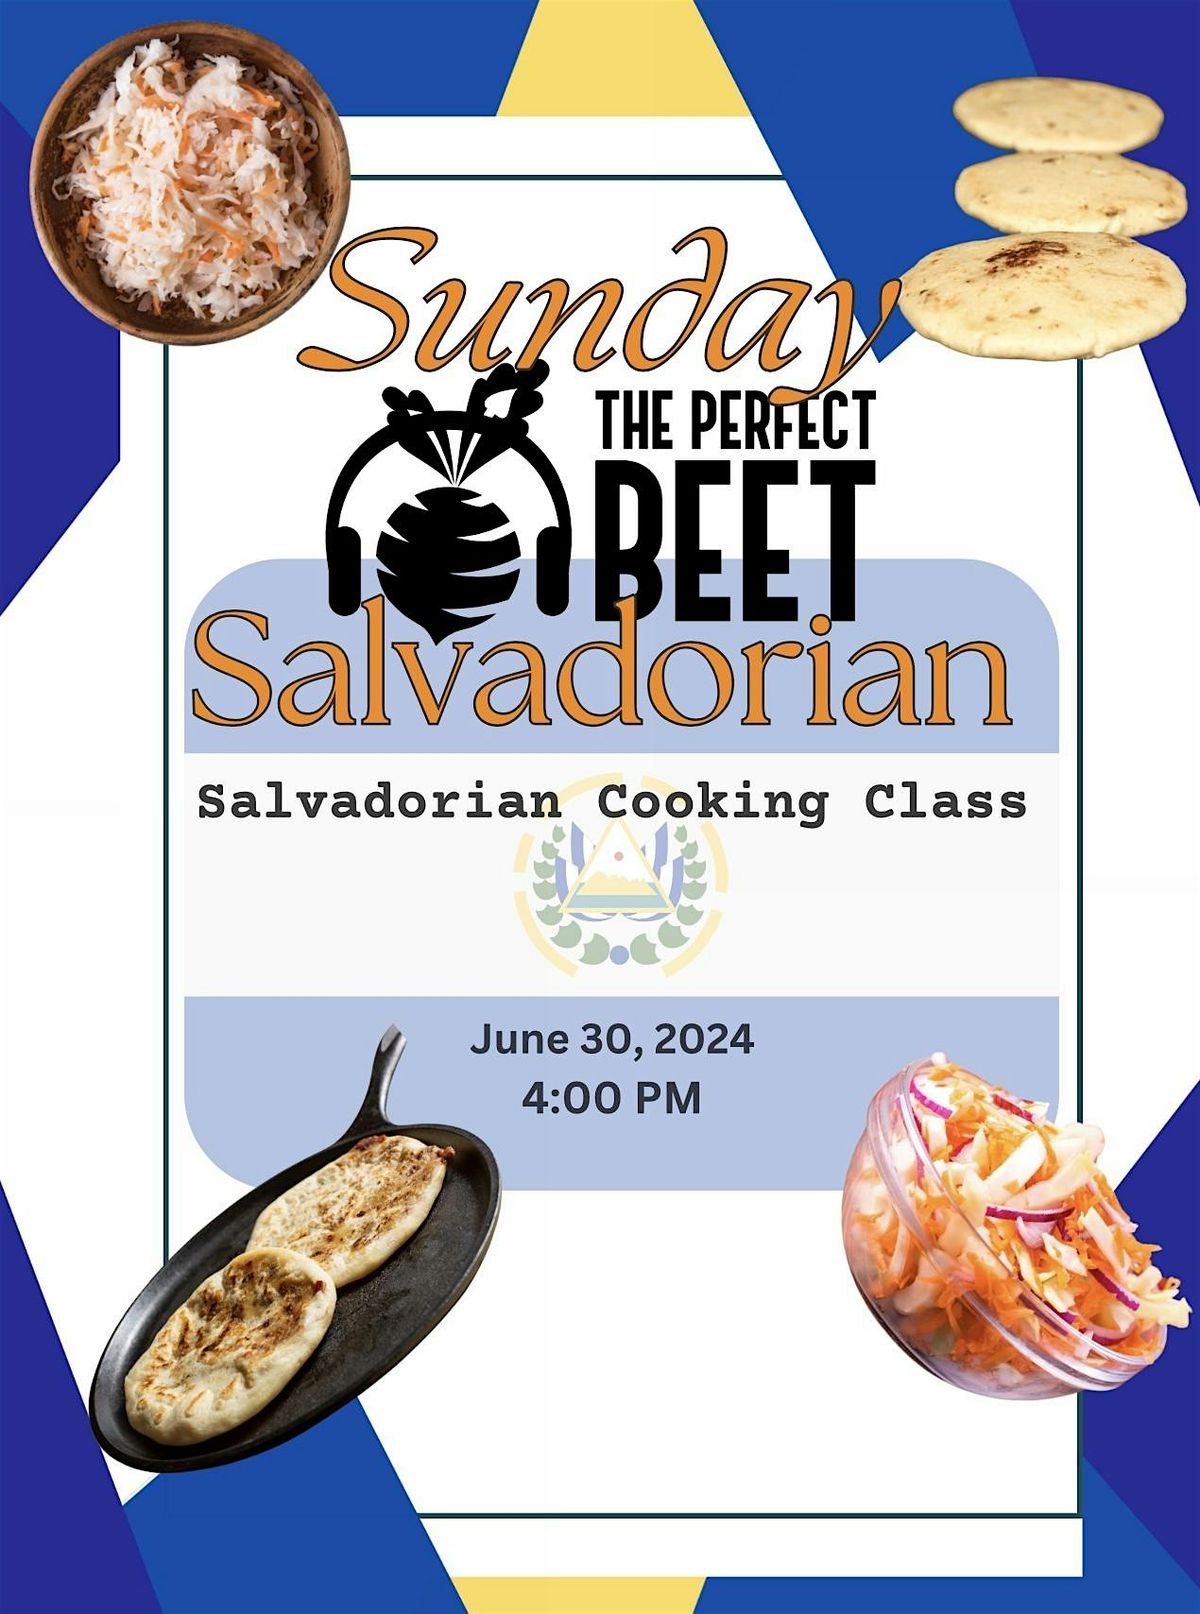 Sunday Salvadorian  Cooking Class @ The Perfect Beet